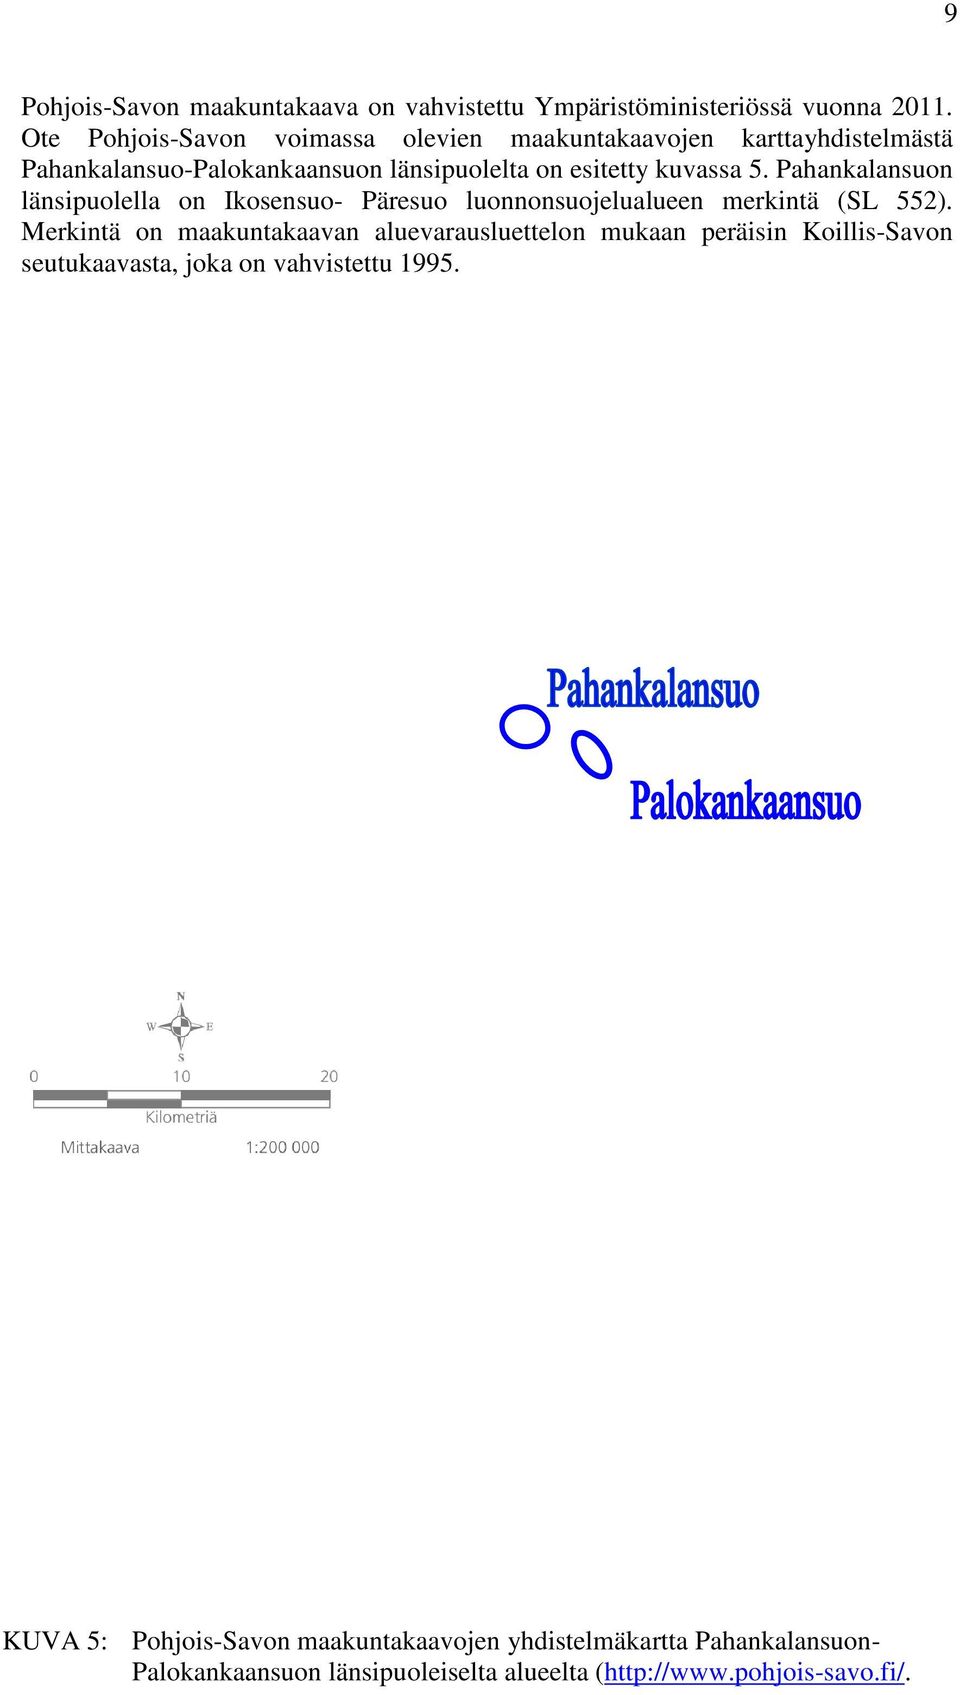 Pahankalansuon länsipuolella on Ikosensuo- Päresuo luonnonsuojelualueen merkintä (SL 552).